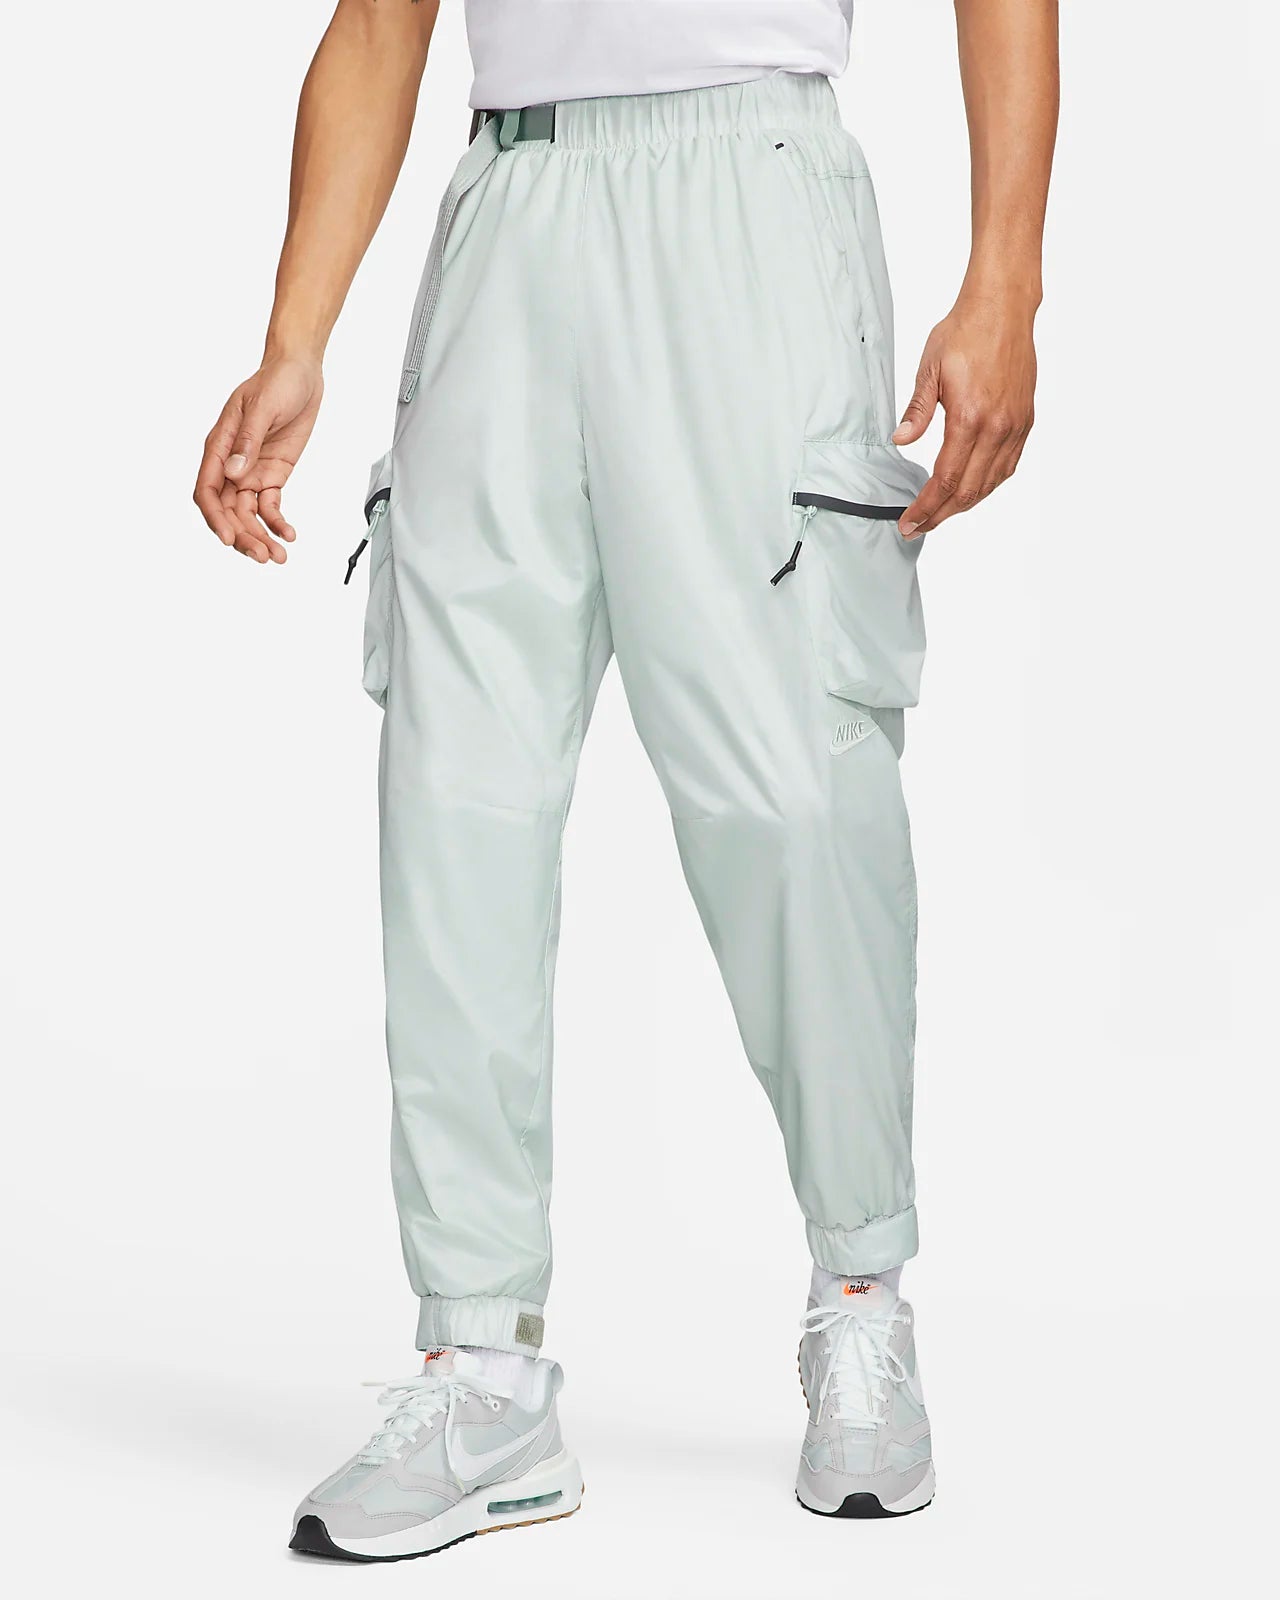 Nike Sportswear Repel Tech Pack Men's Lined Woven Pants “Light Mica”